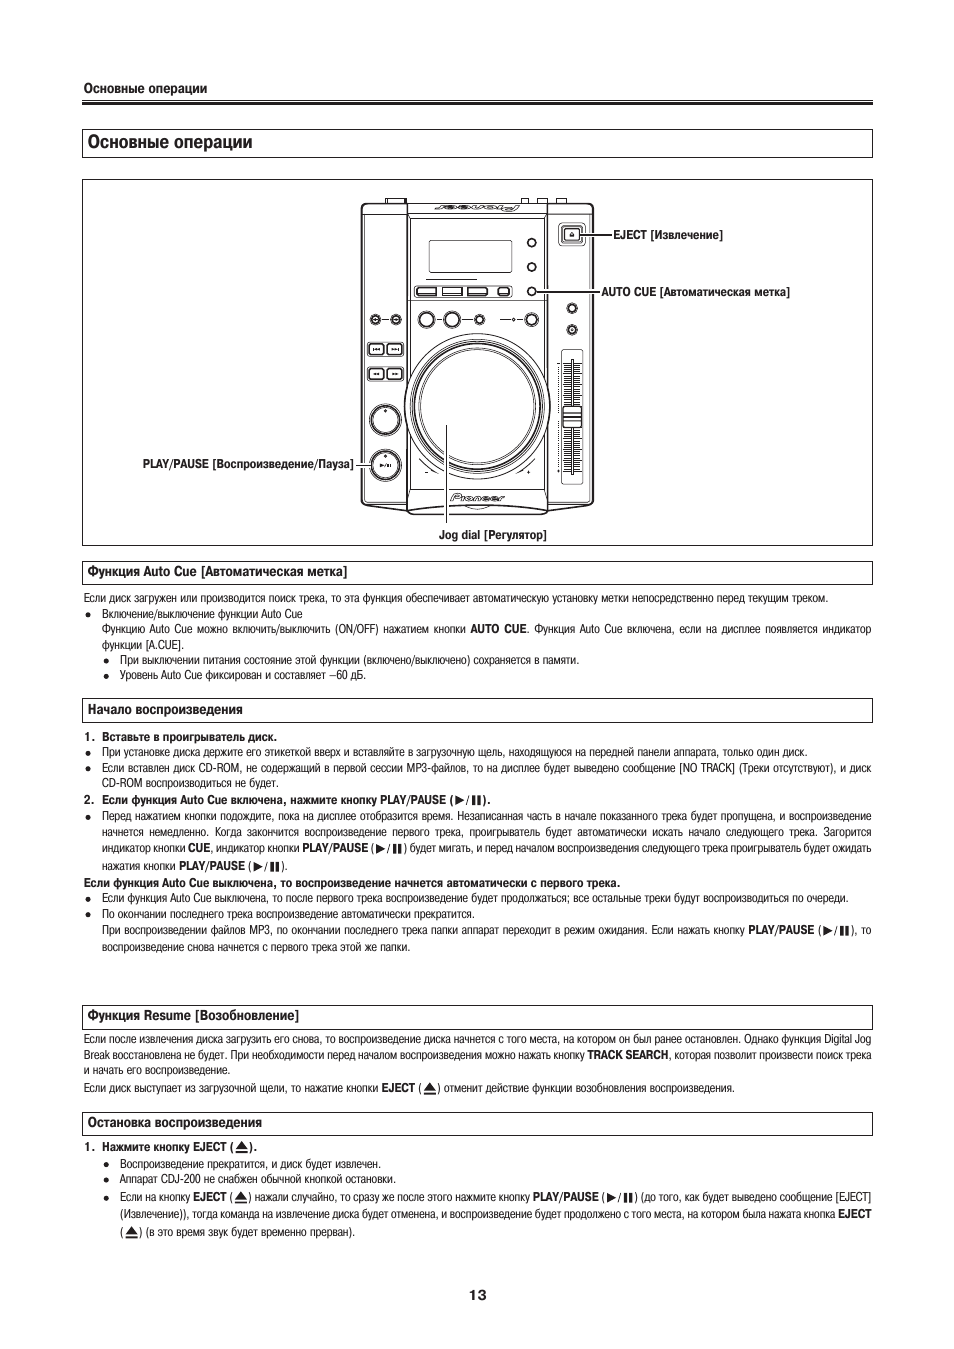 Основные операции | Инструкция по эксплуатации Pioneer CDJ-200 | Страница 13 / 22